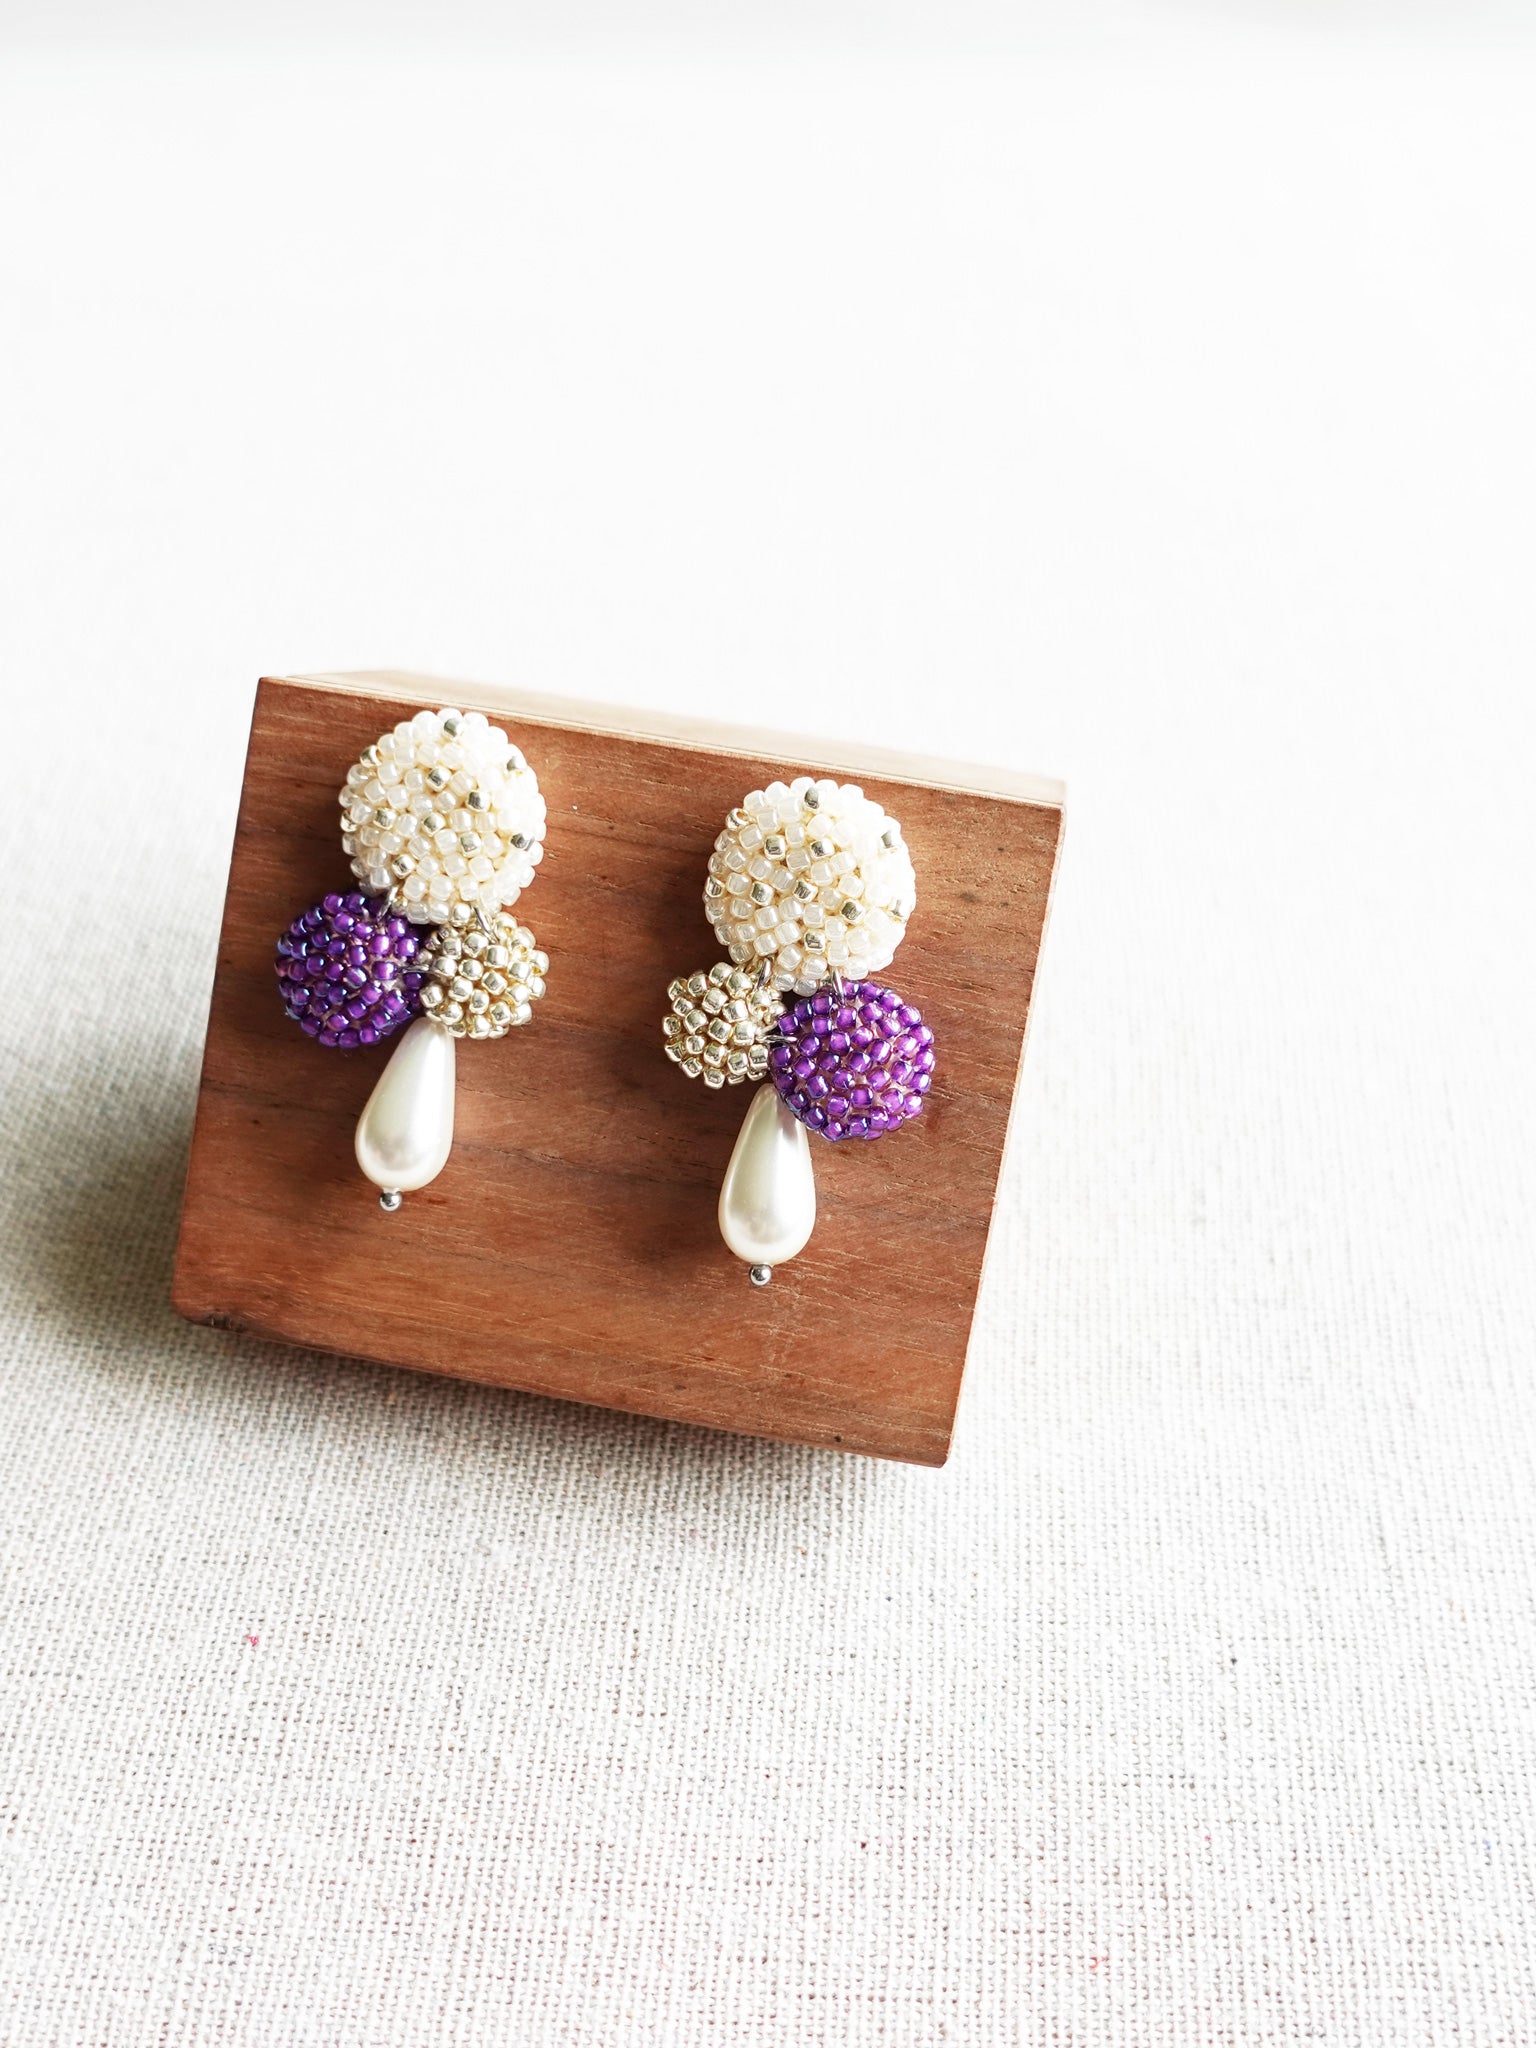 Kasey Earrings in Royal Purple Display Right